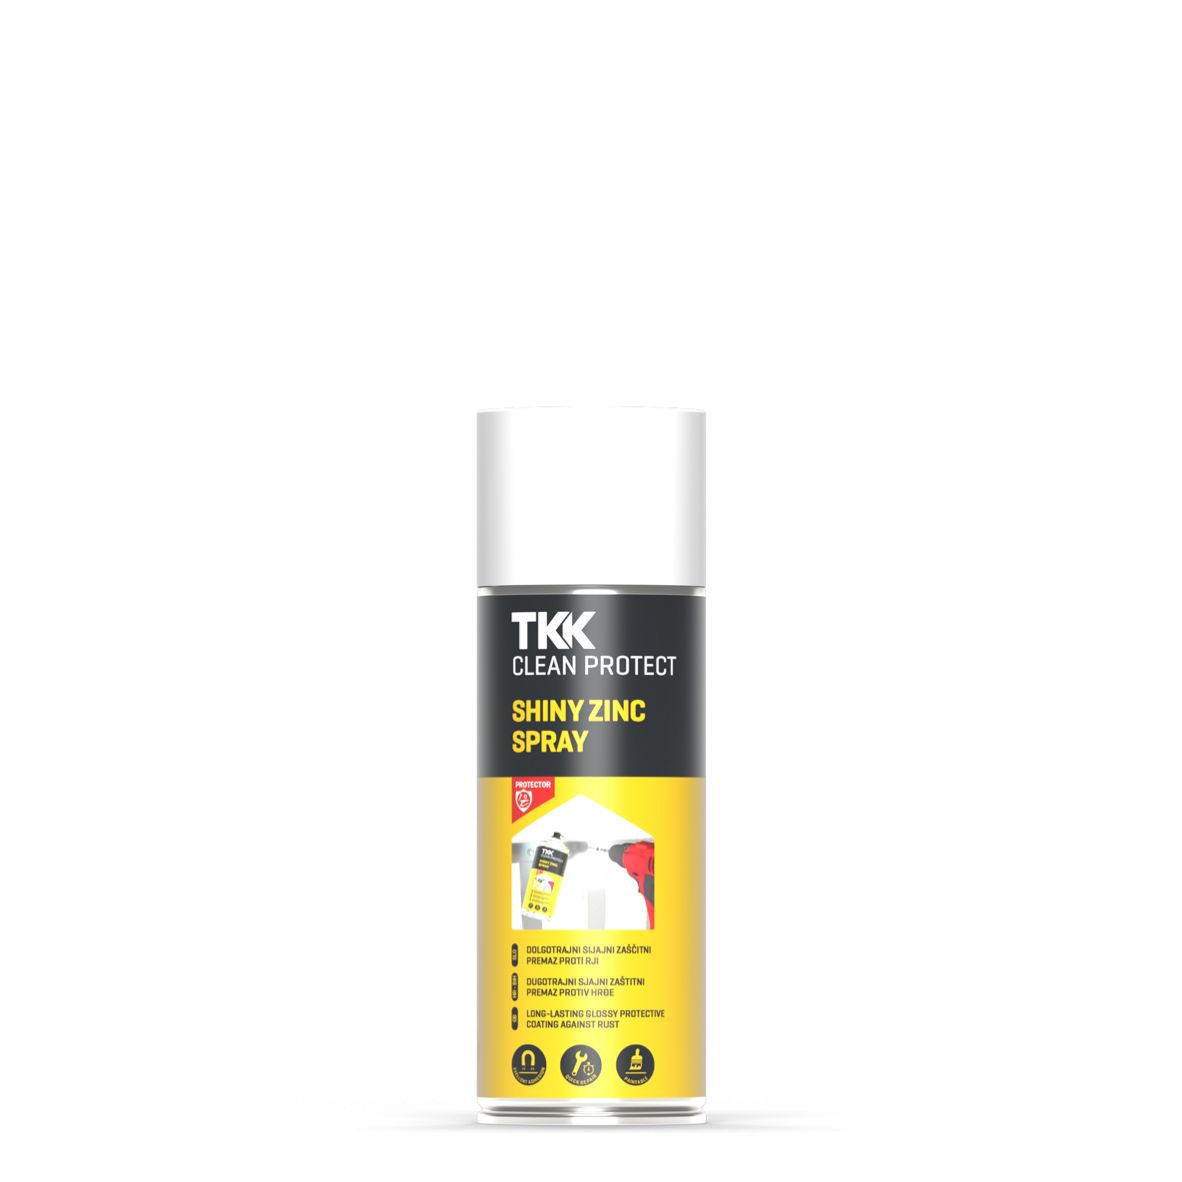 TKK Clean Protect Shiny Zinc Spray